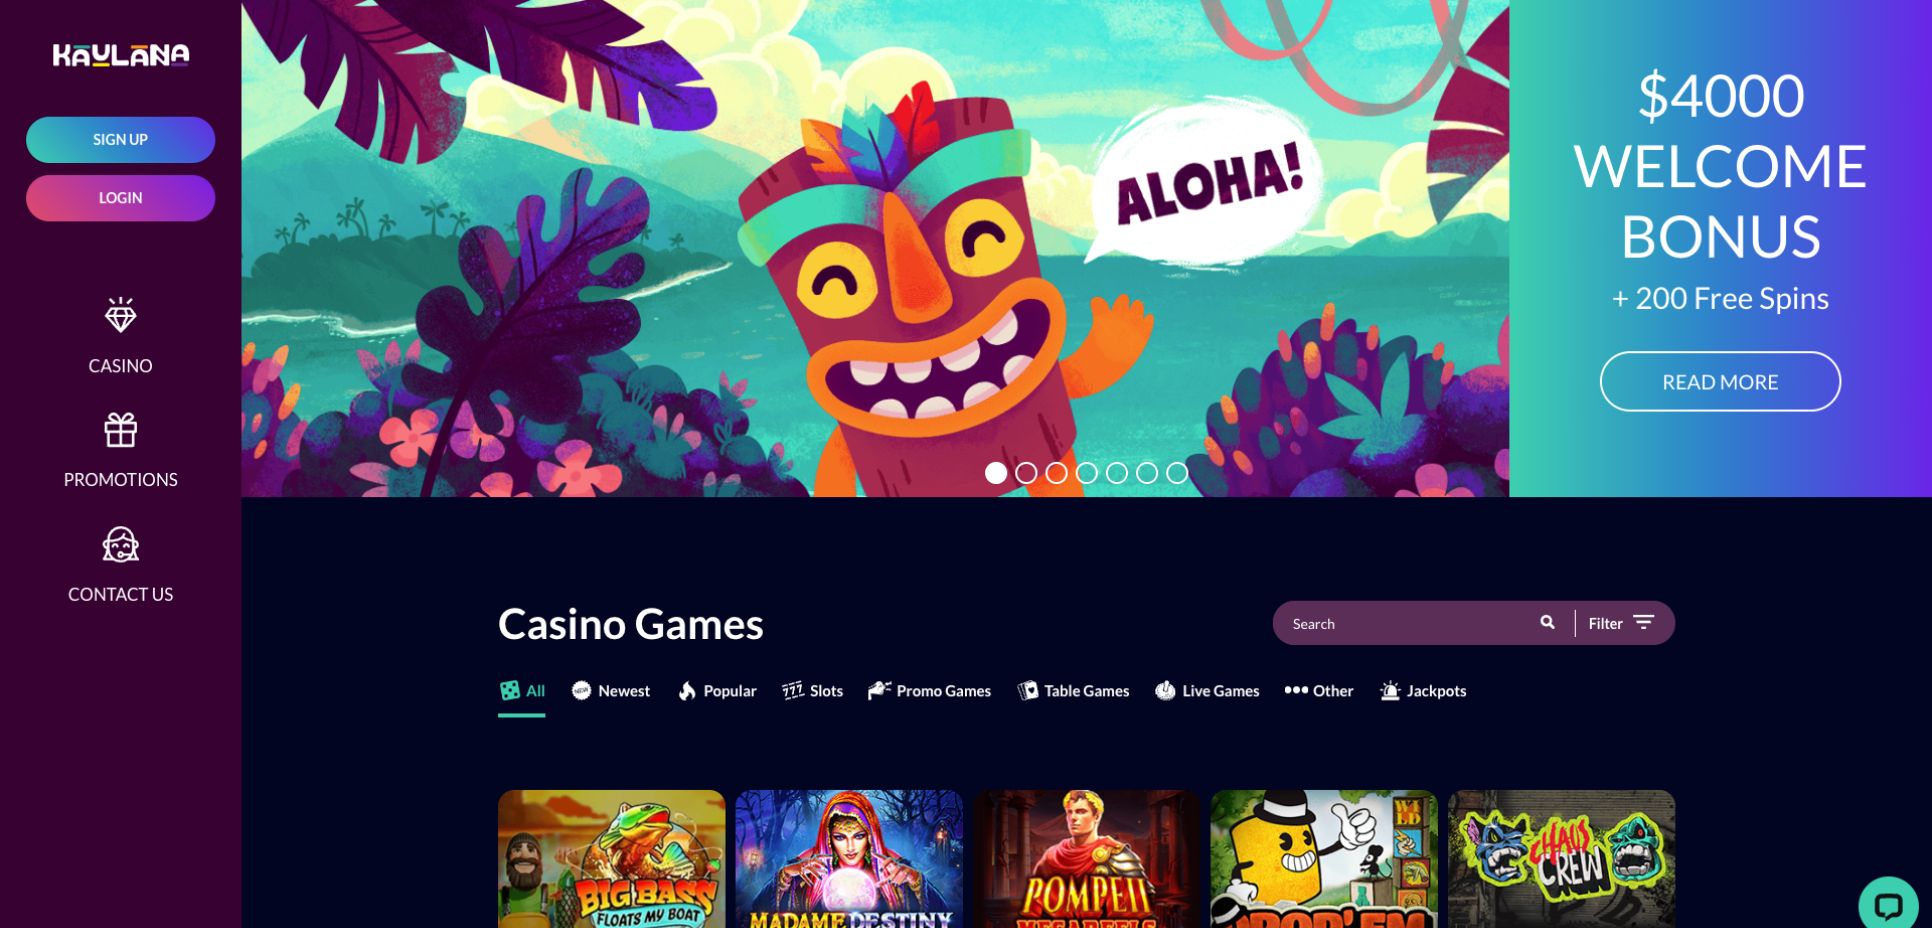 Kaulana Casino Homepage